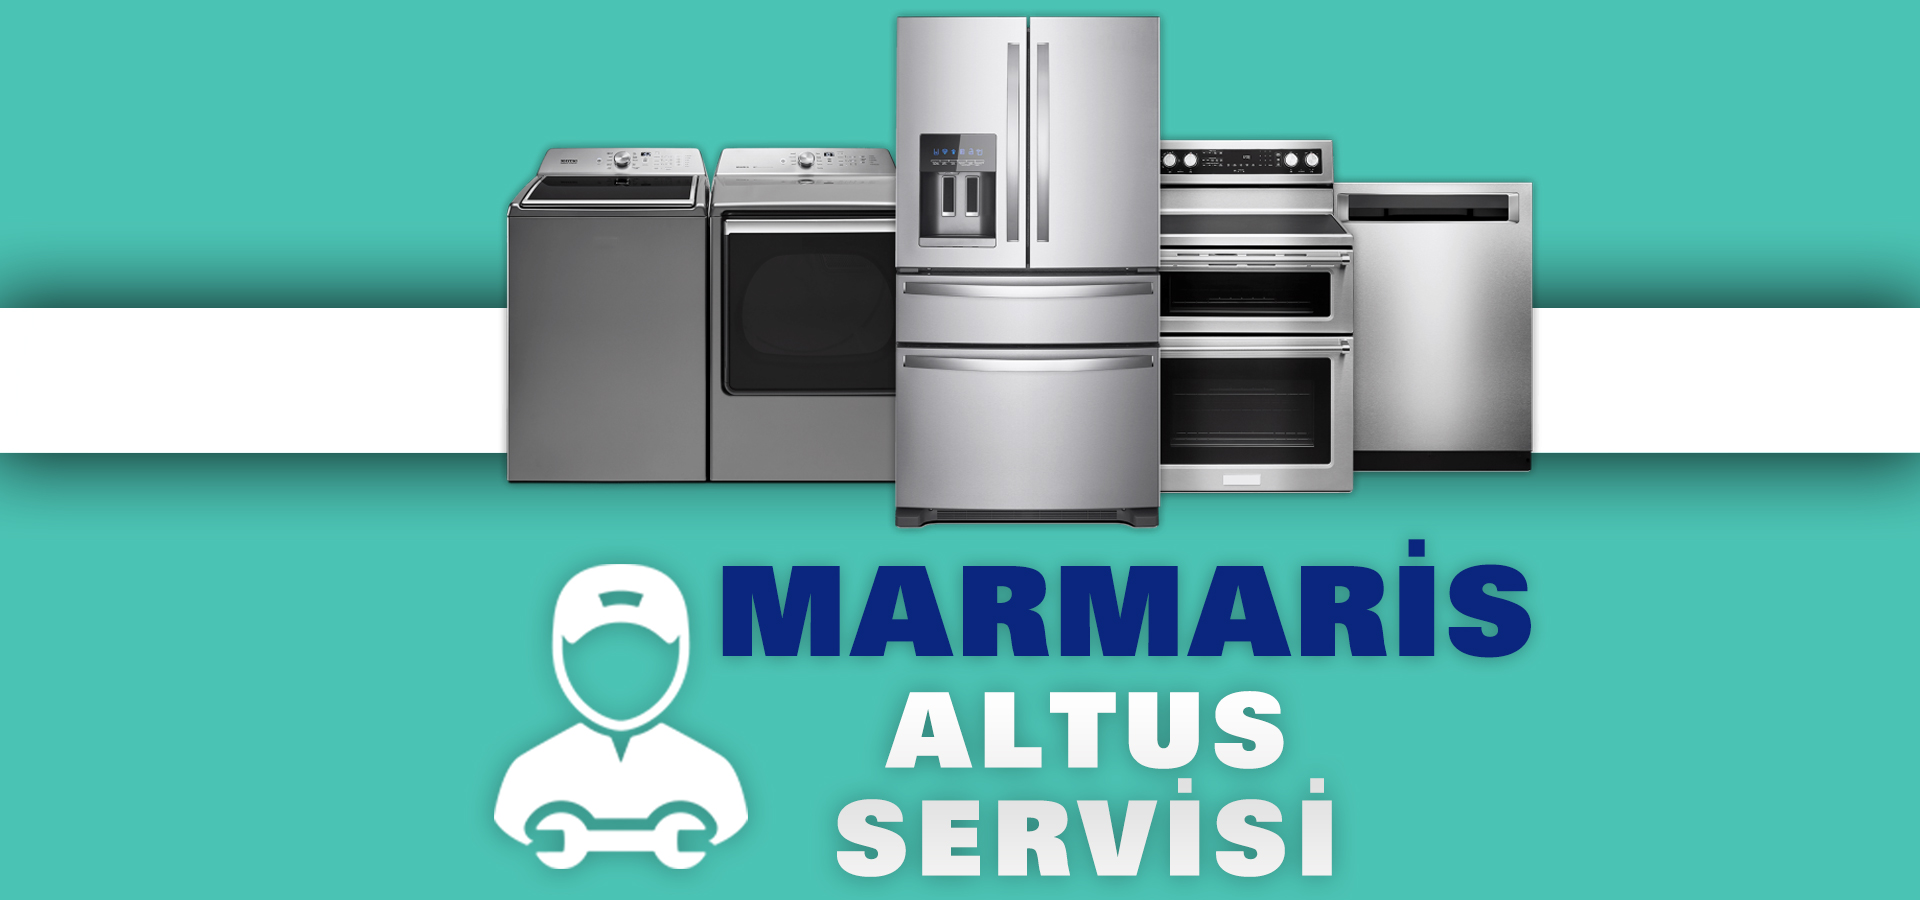 Marmaris Altus Servisi